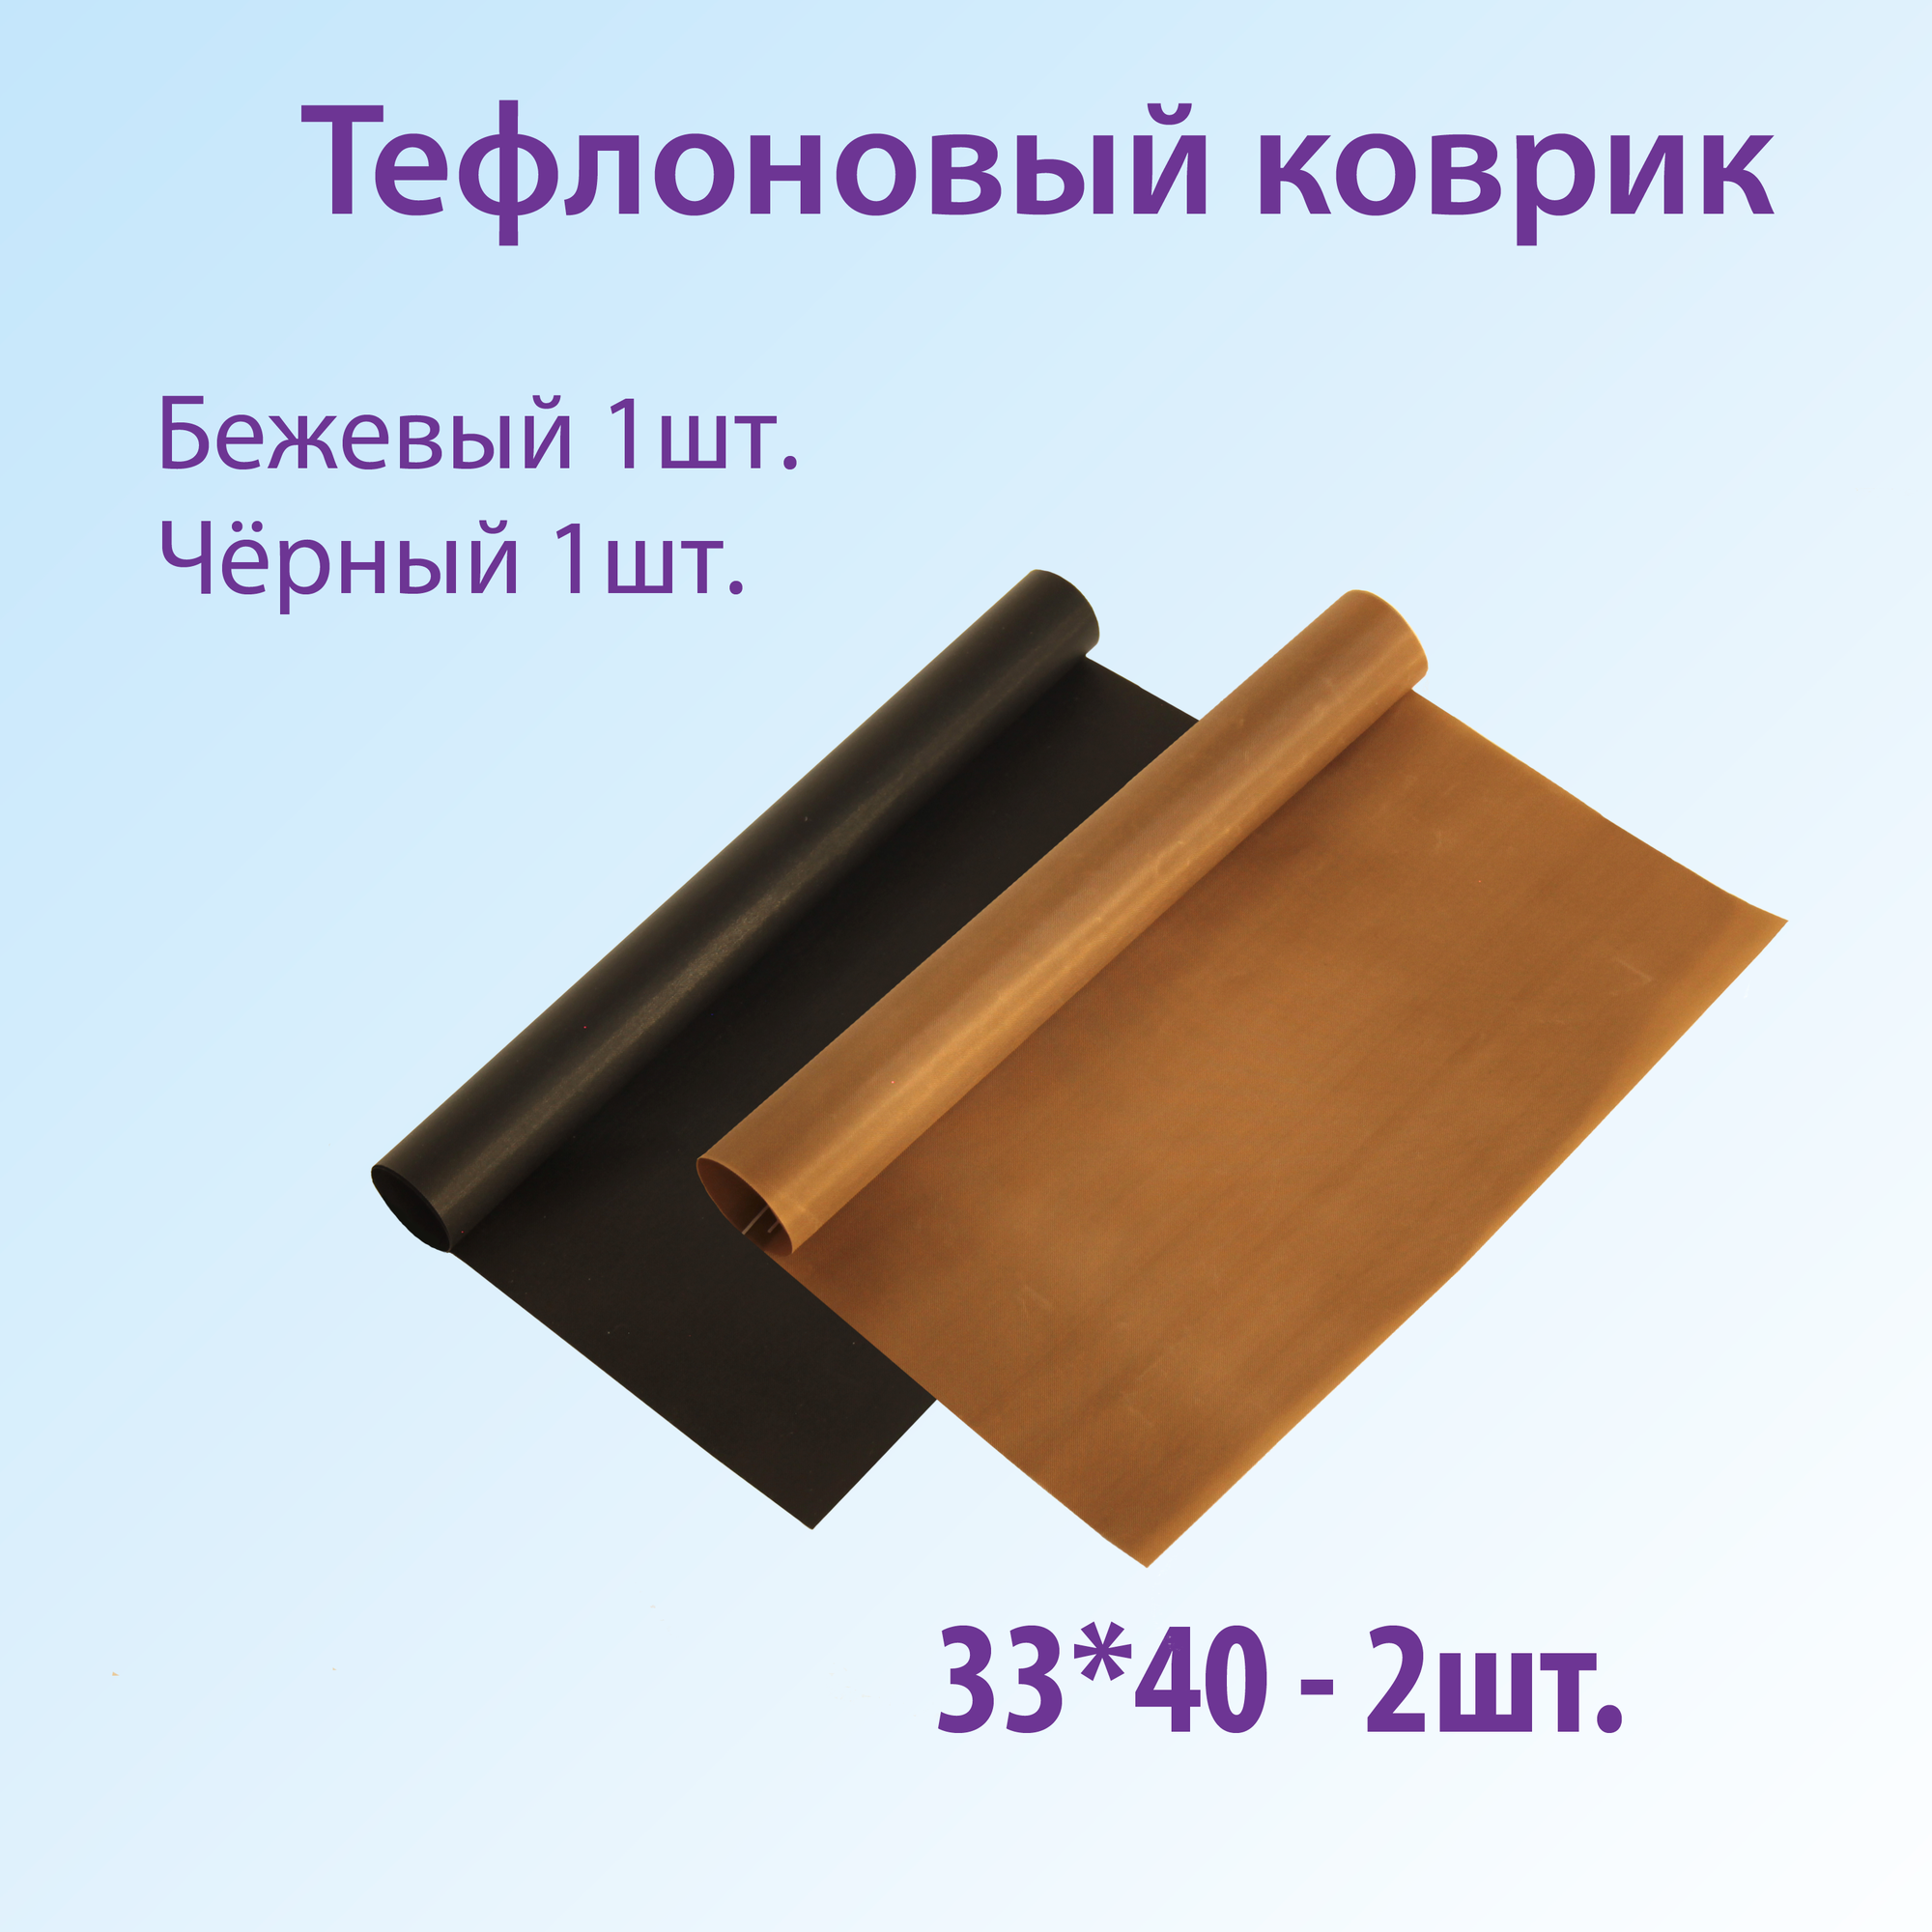 Тефлоновый коврик для выпечки FAVZIJA - 2шт. Антипригарный многоразовый коврик для выпечки размер 33х40см